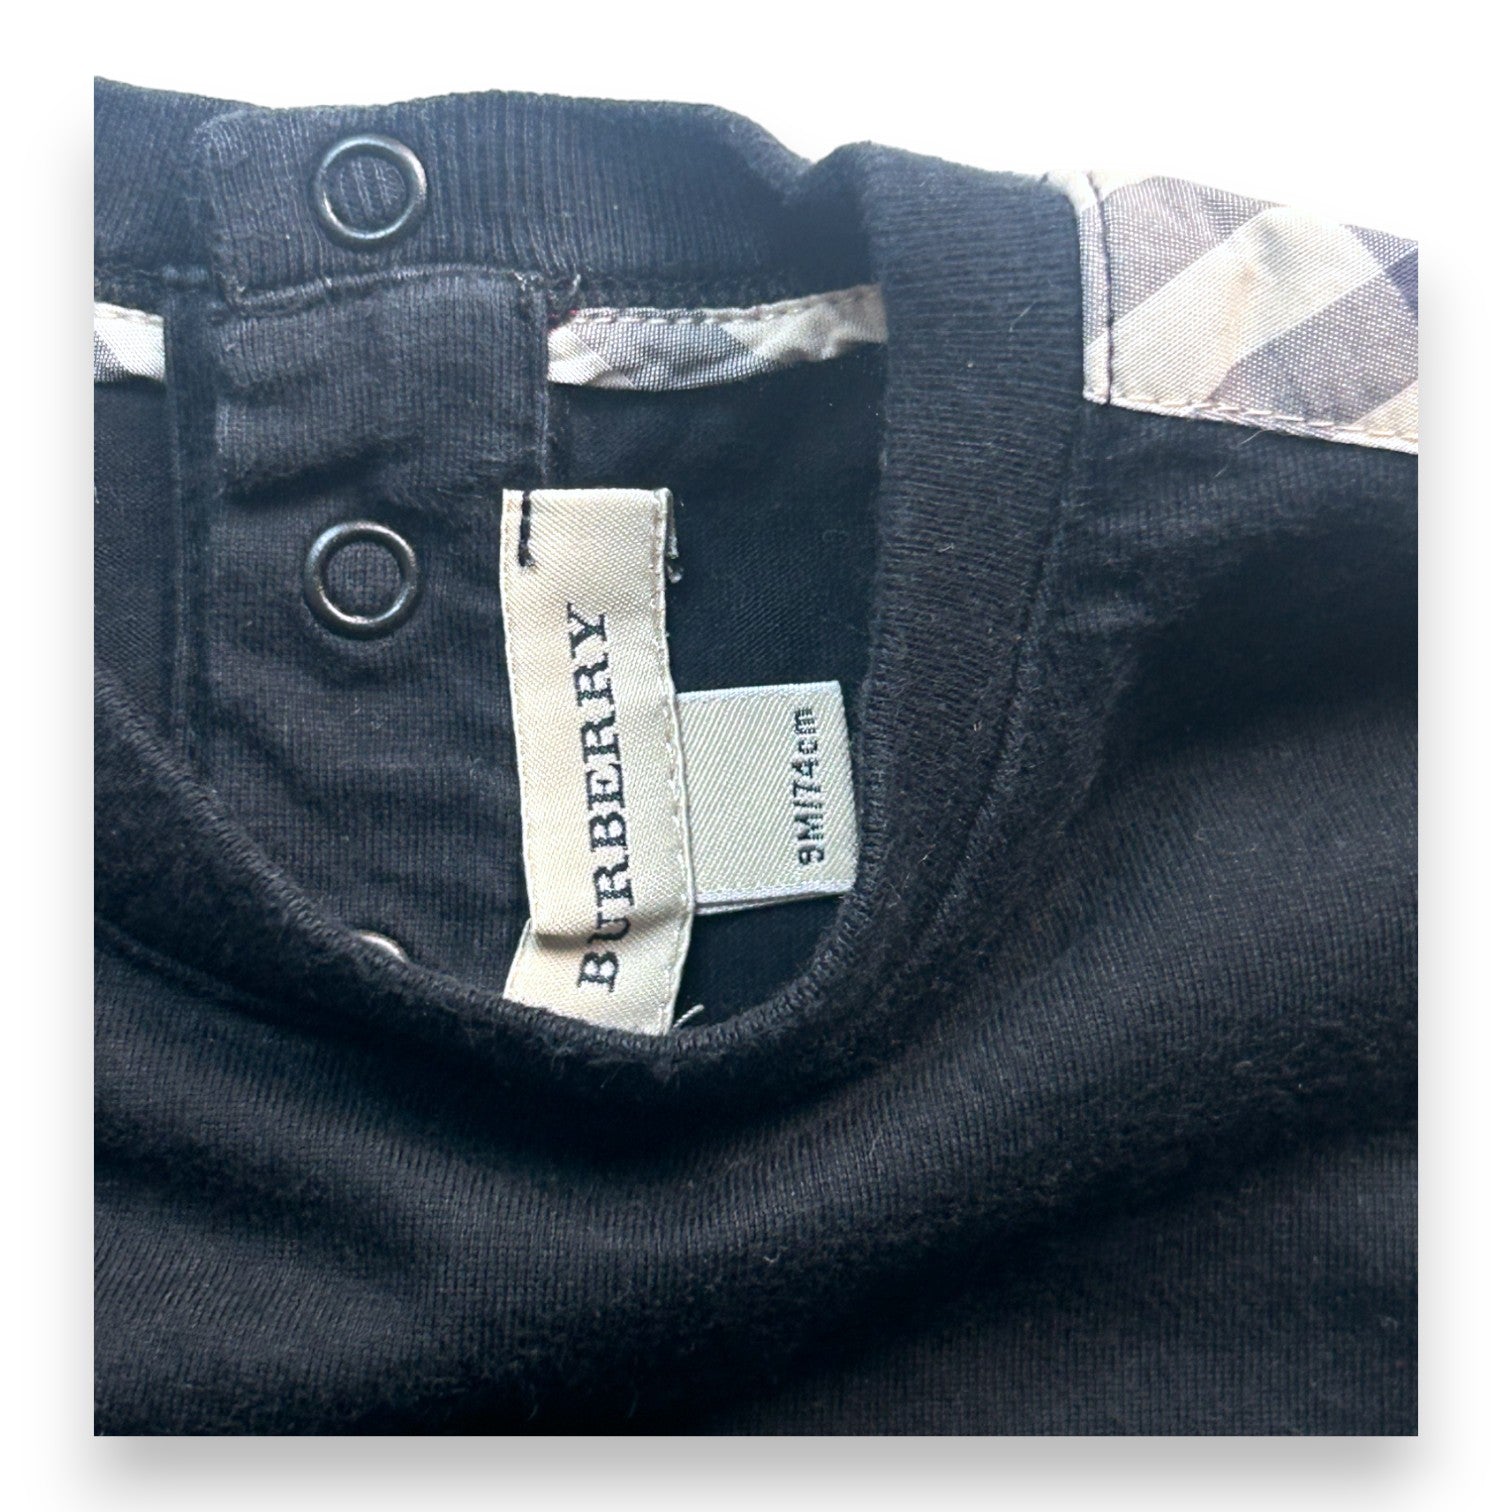 BURBERRY - T-shirt noir - 9 mois